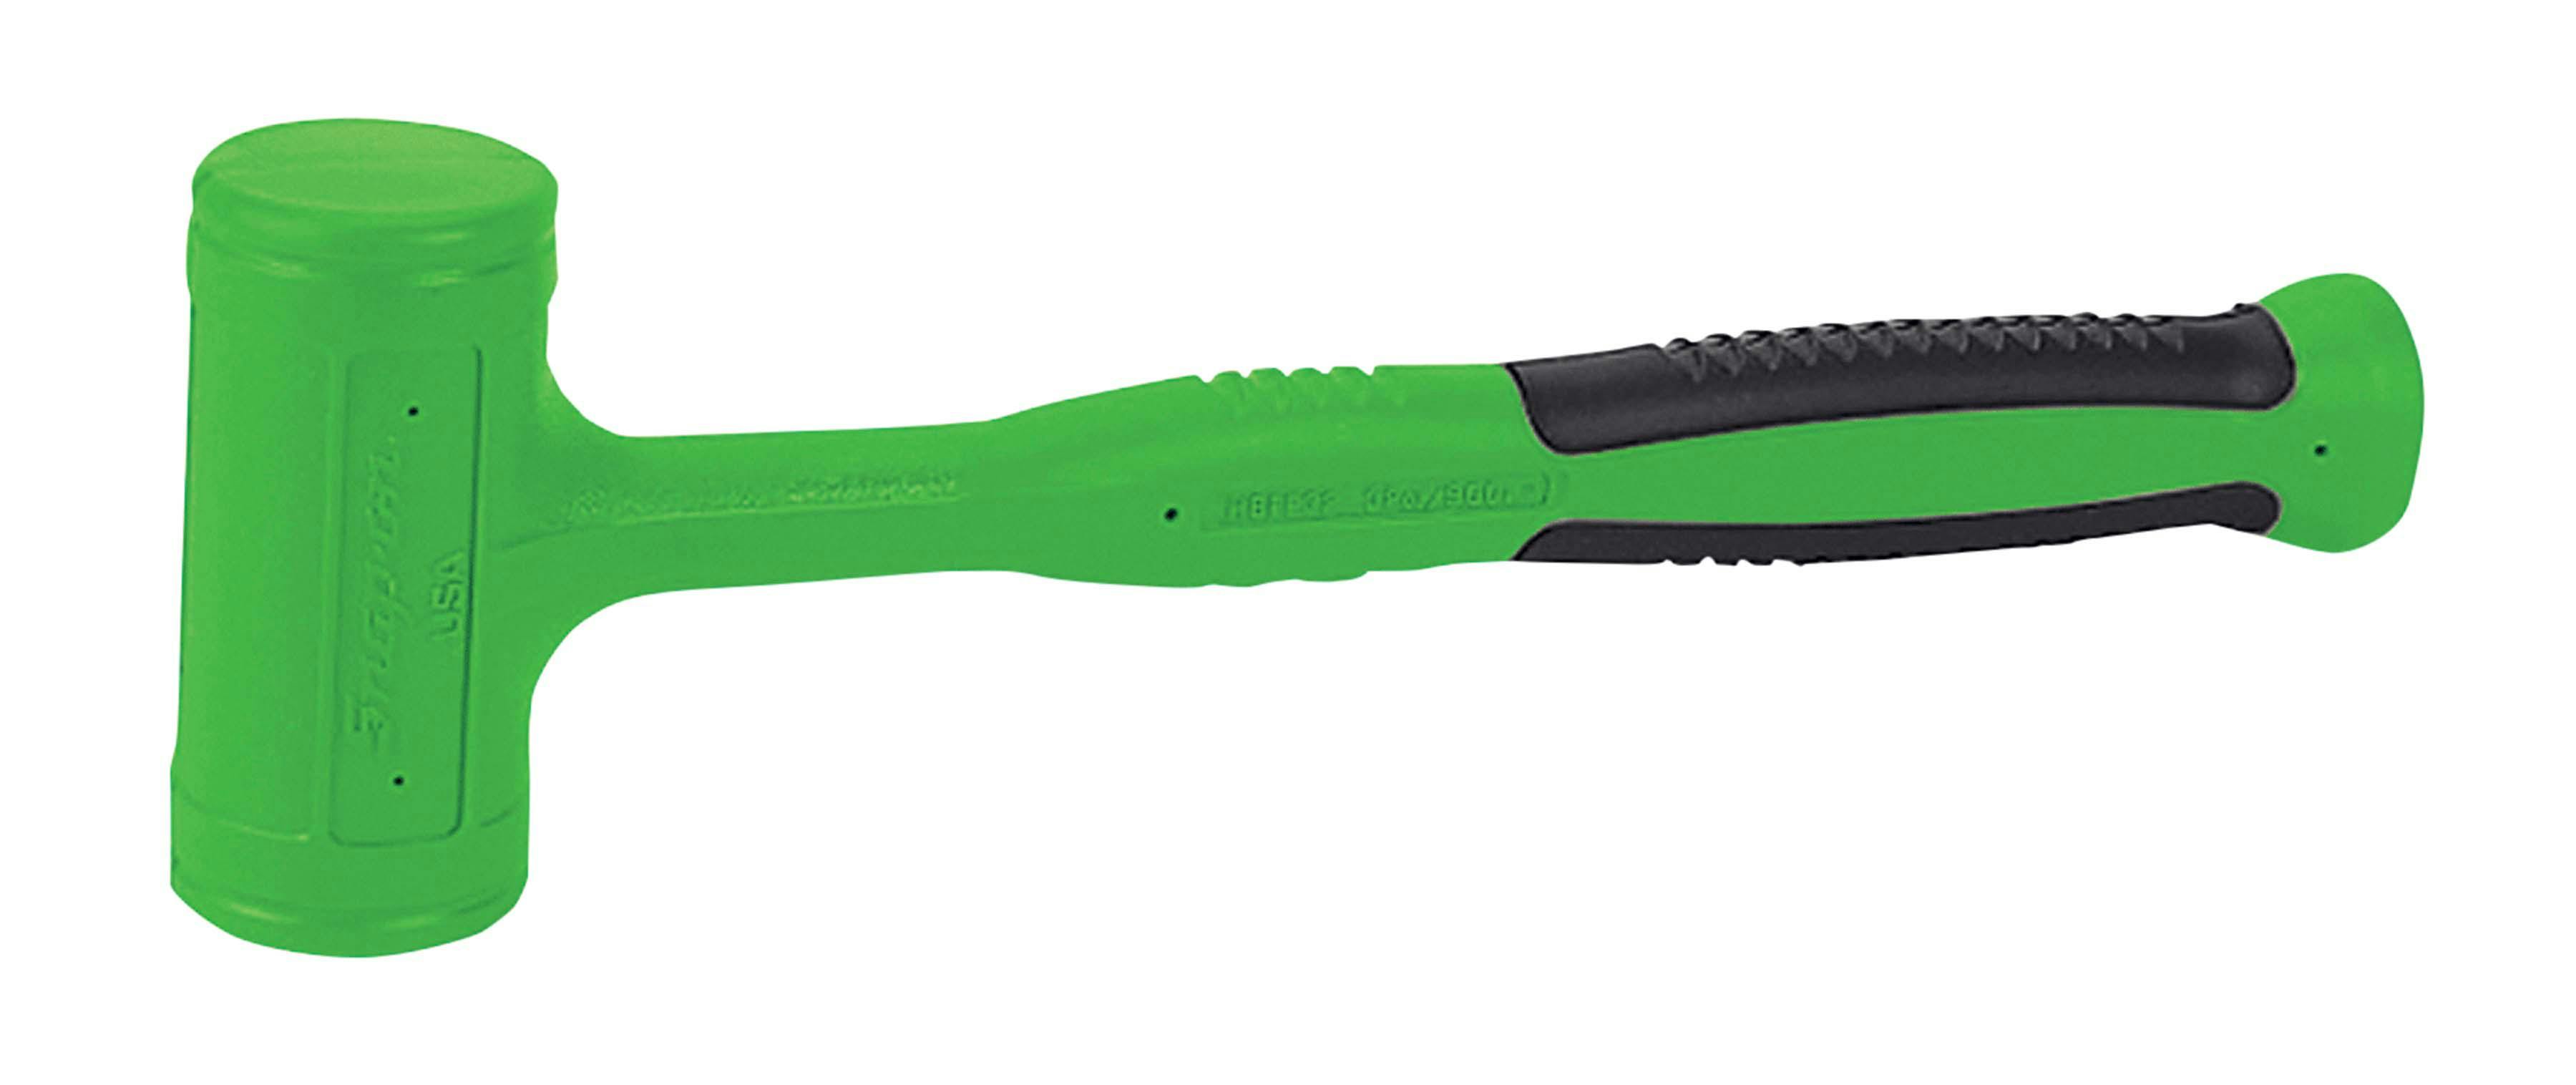 32 oz Soft Grip Dead Blow Hammer (Green)